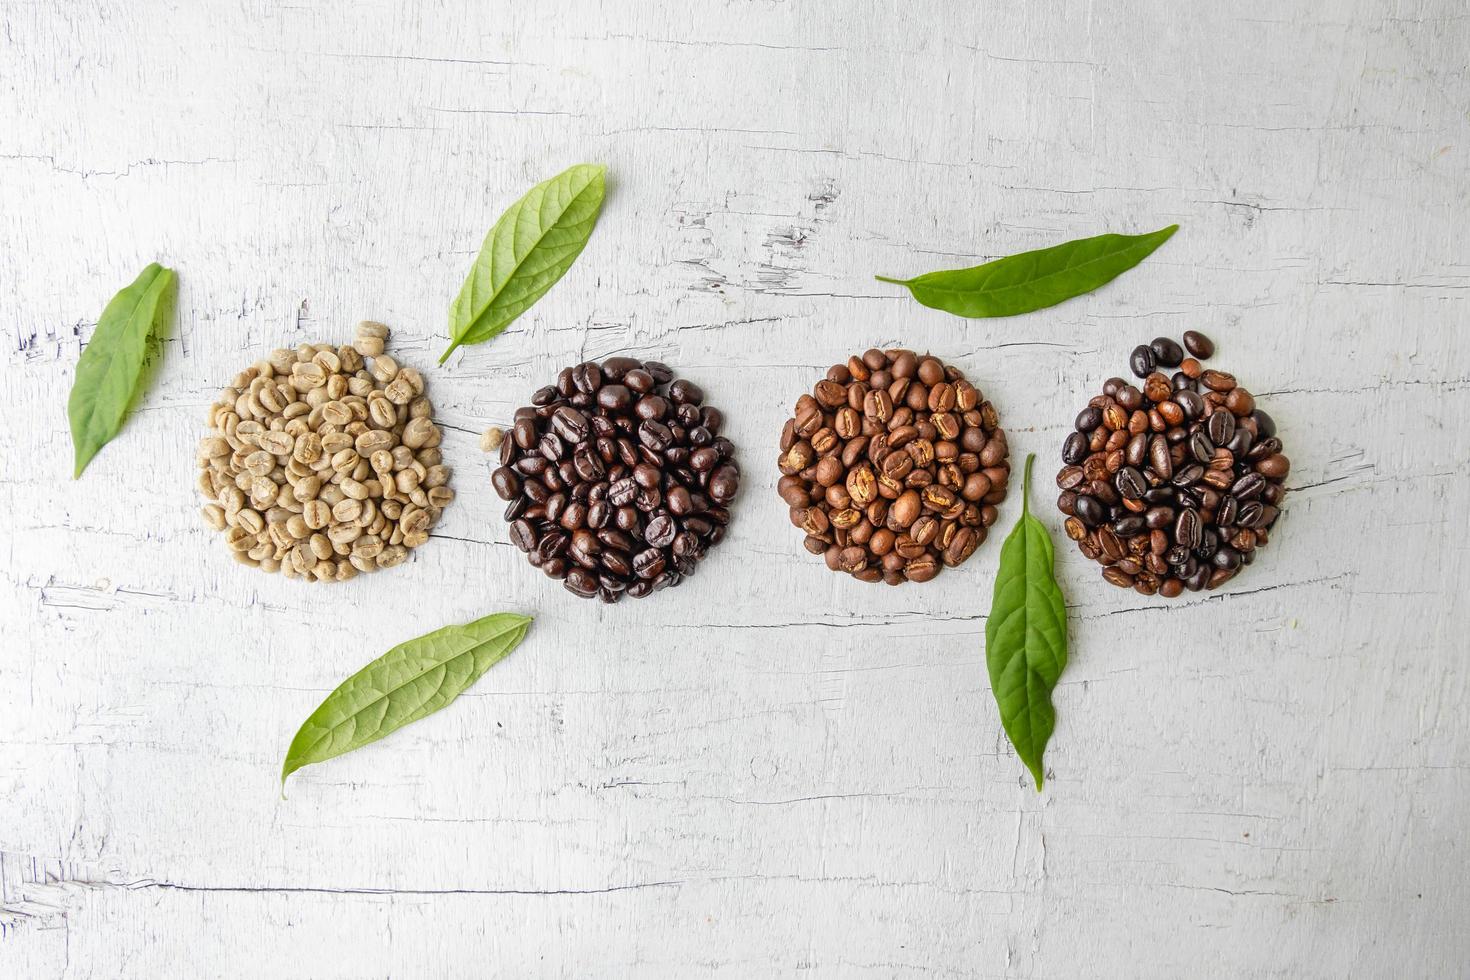 ett collage av kaffebönor som visar olika steg av rostning från gröna bönor till rostning foto